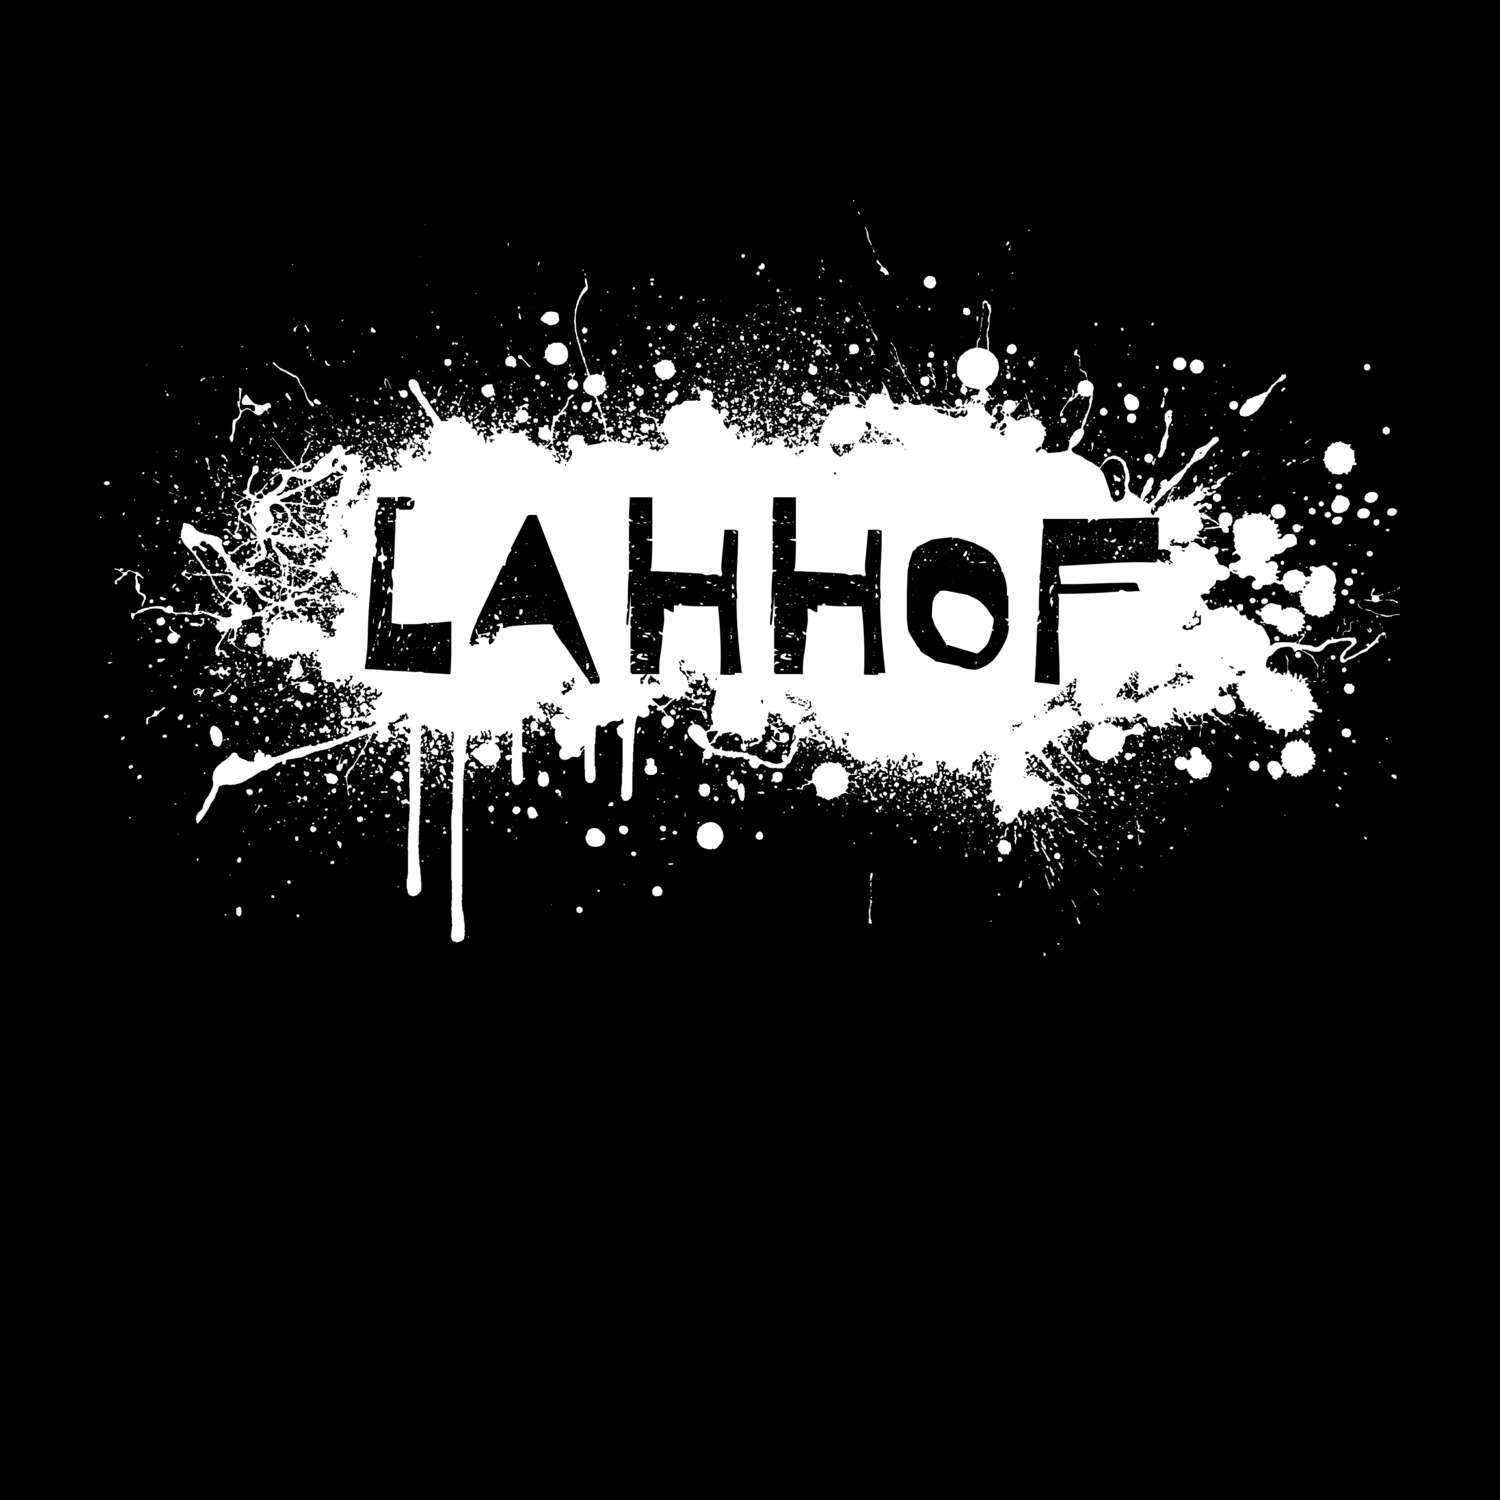 Lahhof T-Shirt »Paint Splash Punk«